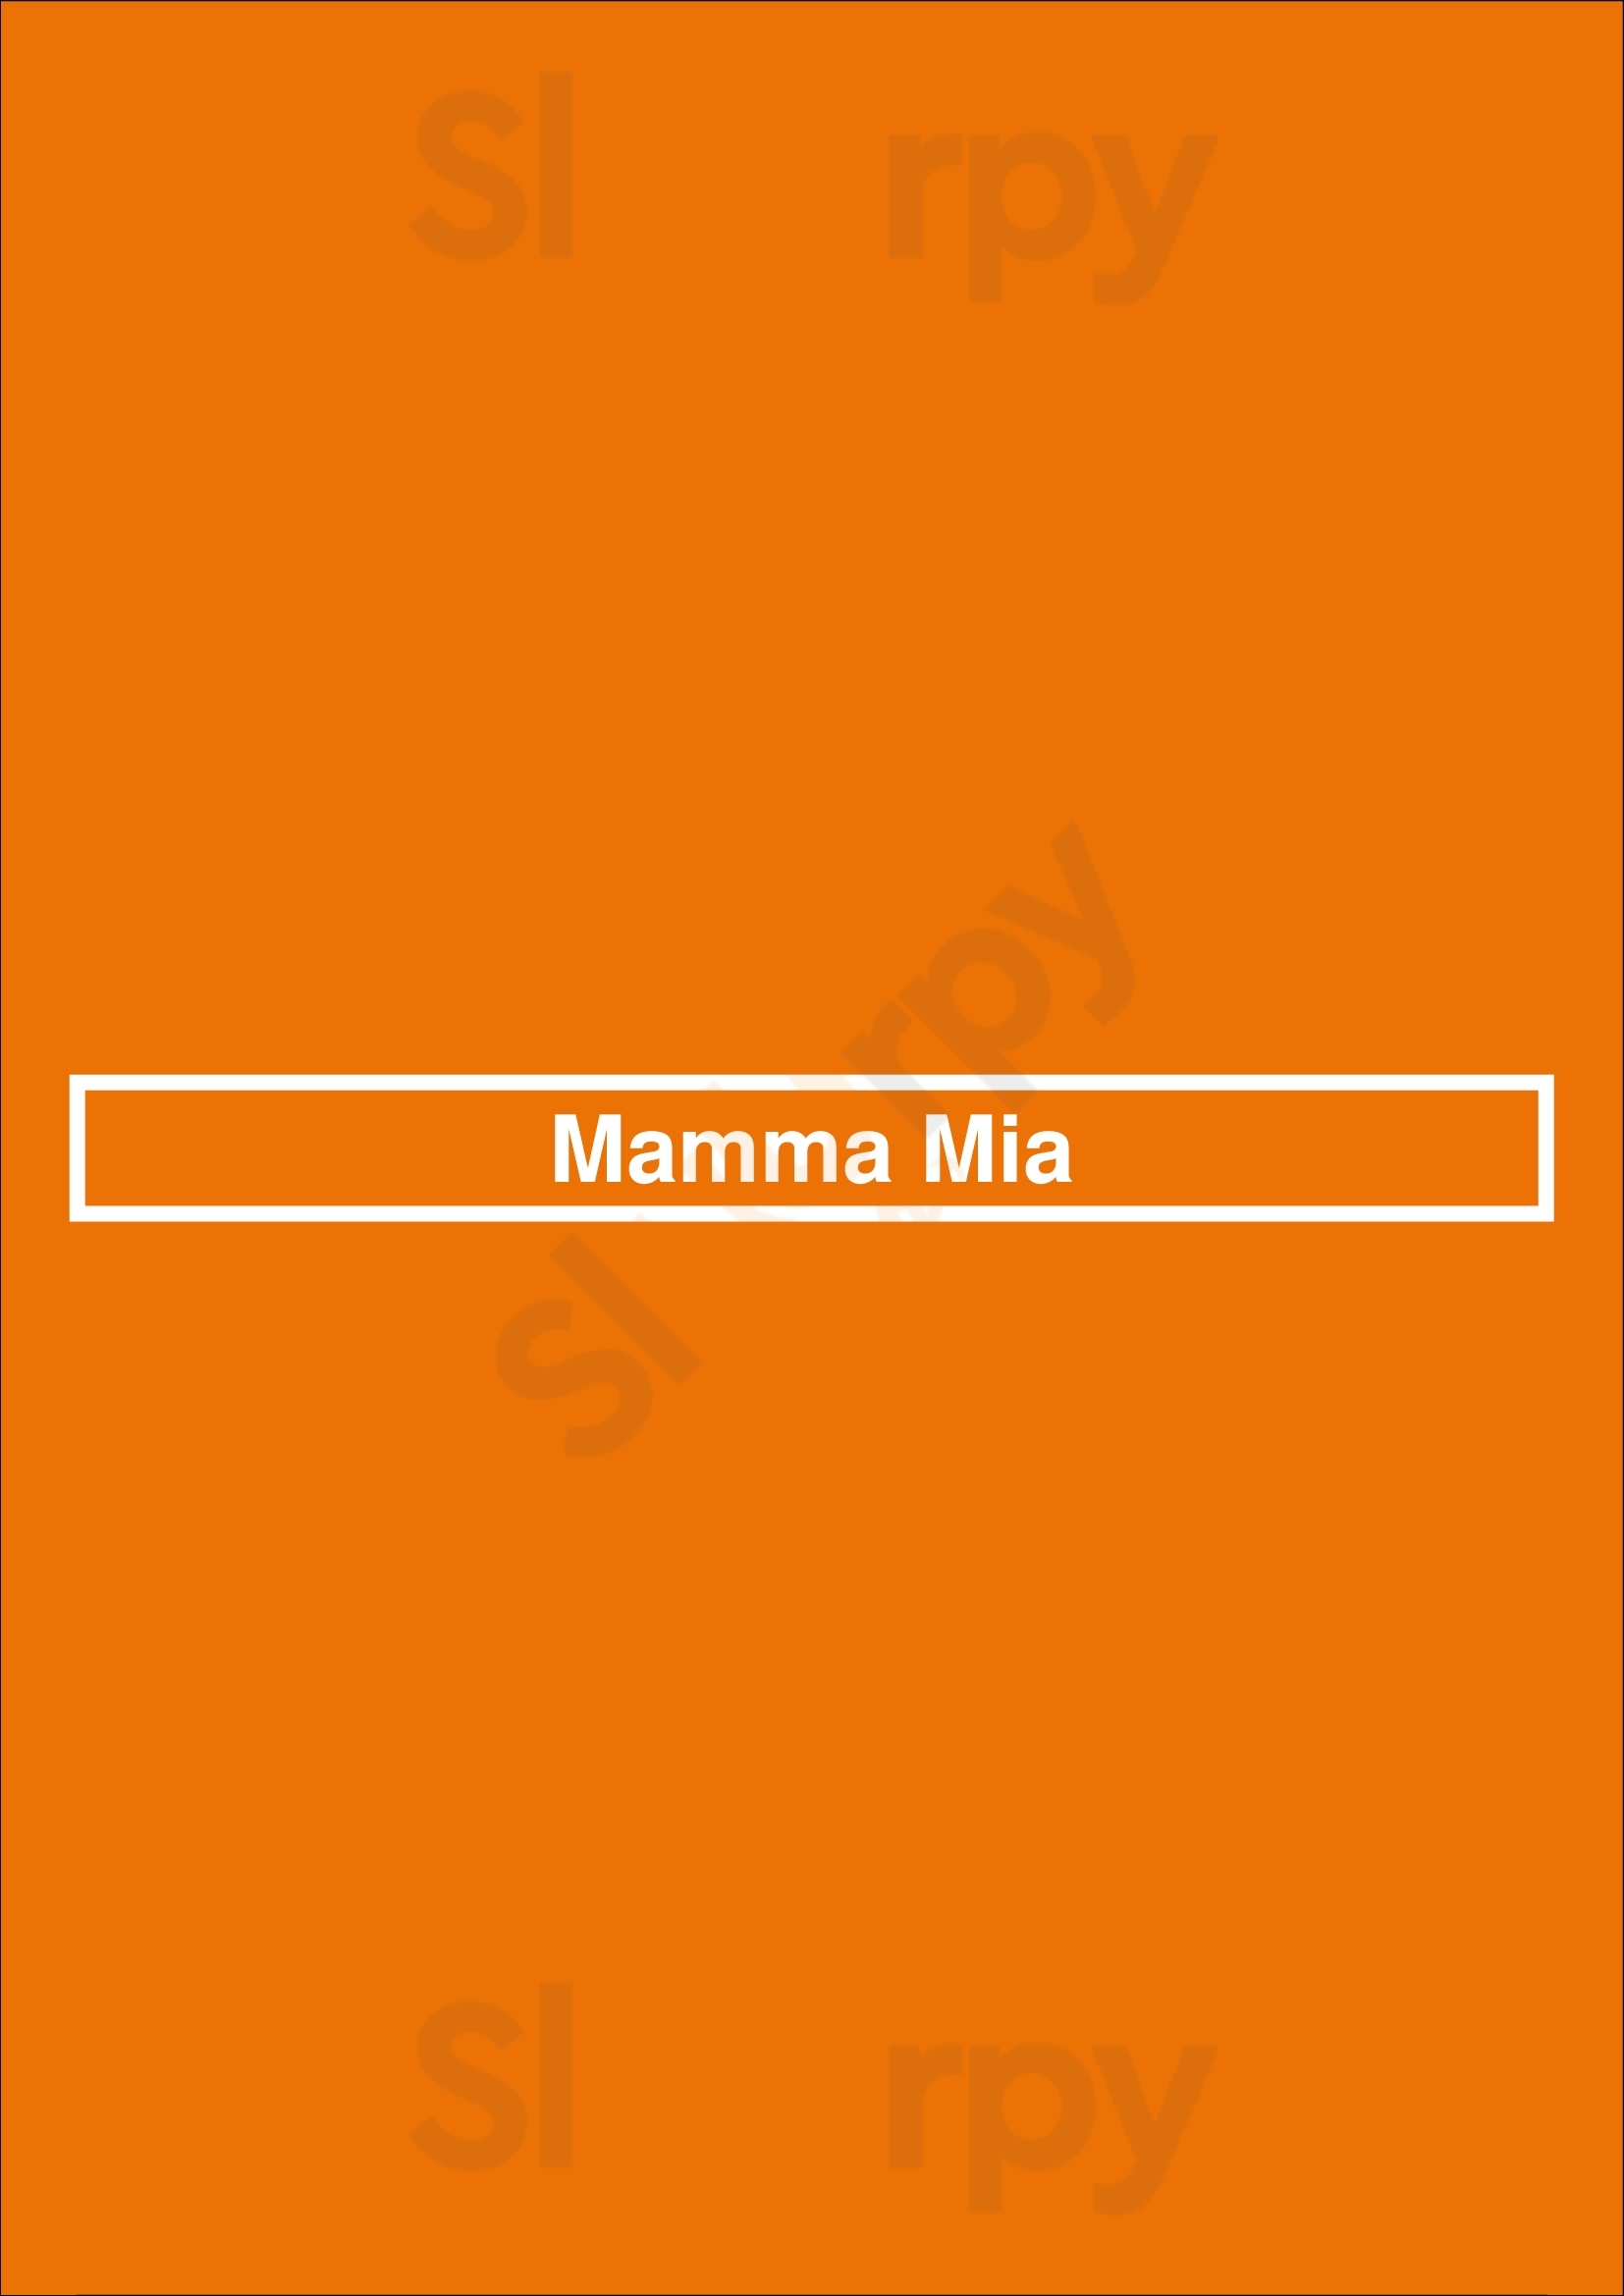 Mamma Mia Halle Menu - 1